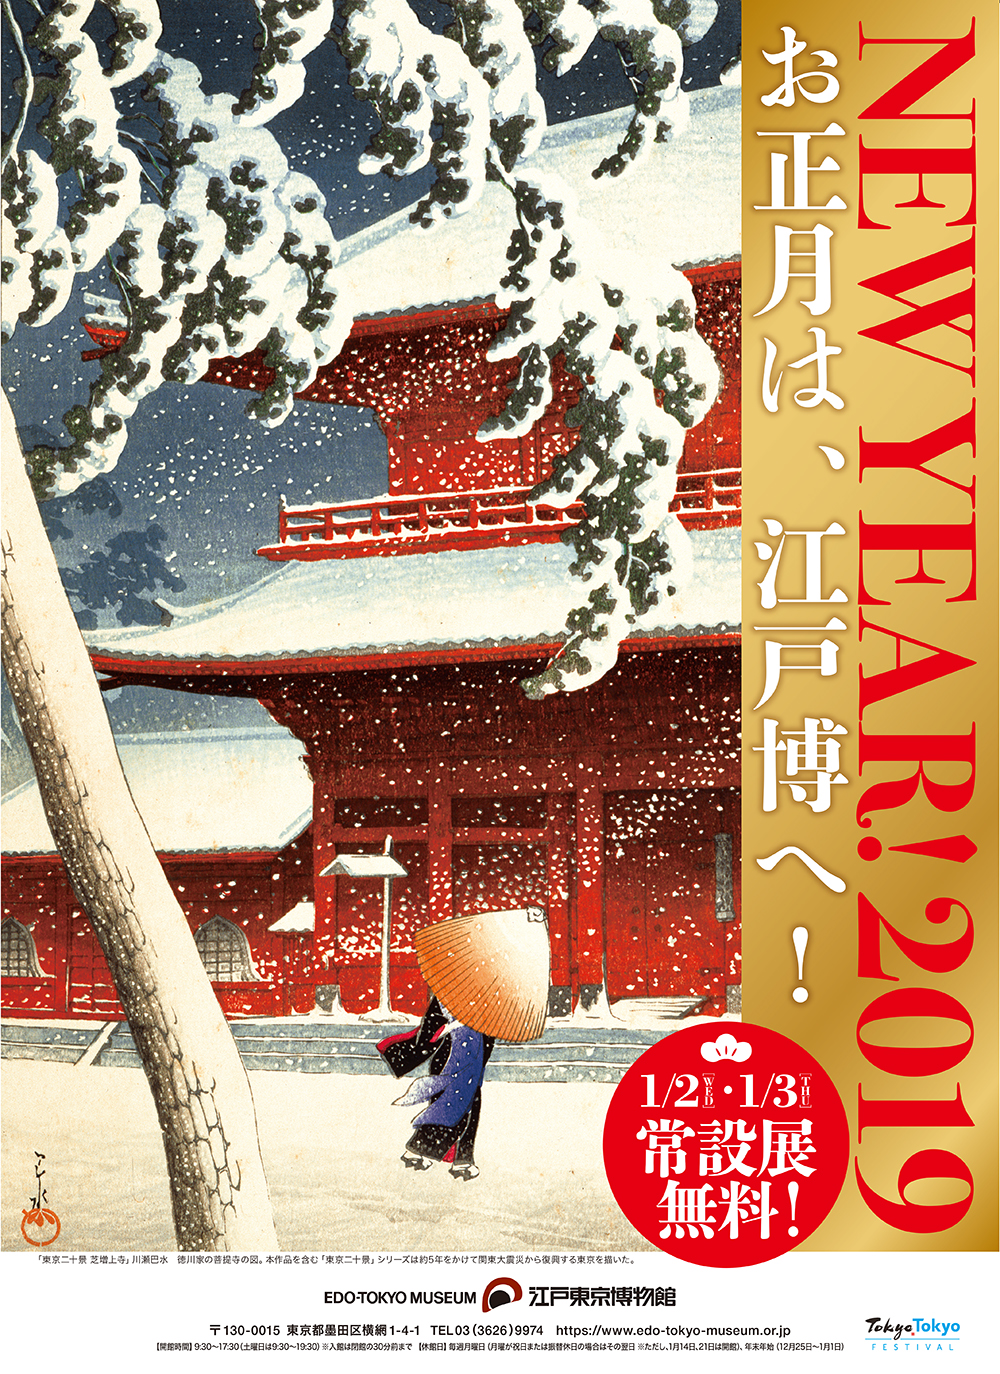 19年のお正月はミュージアムへ 新春を祝う様々なイベントで皆様をお迎えいたします 公益財団法人東京都歴史文化財団